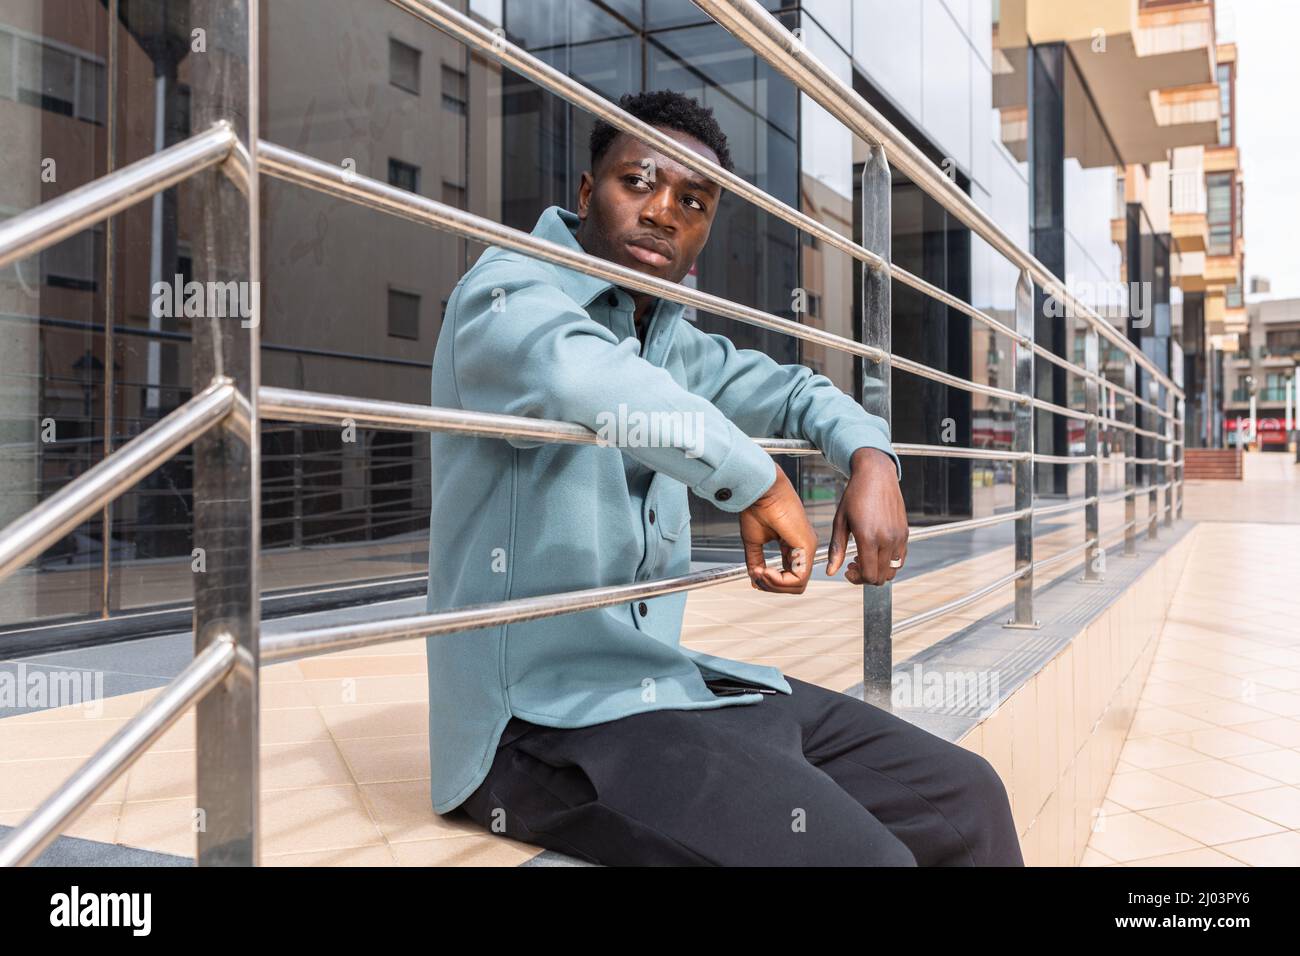 Seriöser junger afroamerikanischer Tausendjähriger Mann mit dunklem lockigem Haar in stilvollem Outfit, das sich auf Metallgeländer stützt und beim Sitzen nachdenklich davonschaut Stockfoto